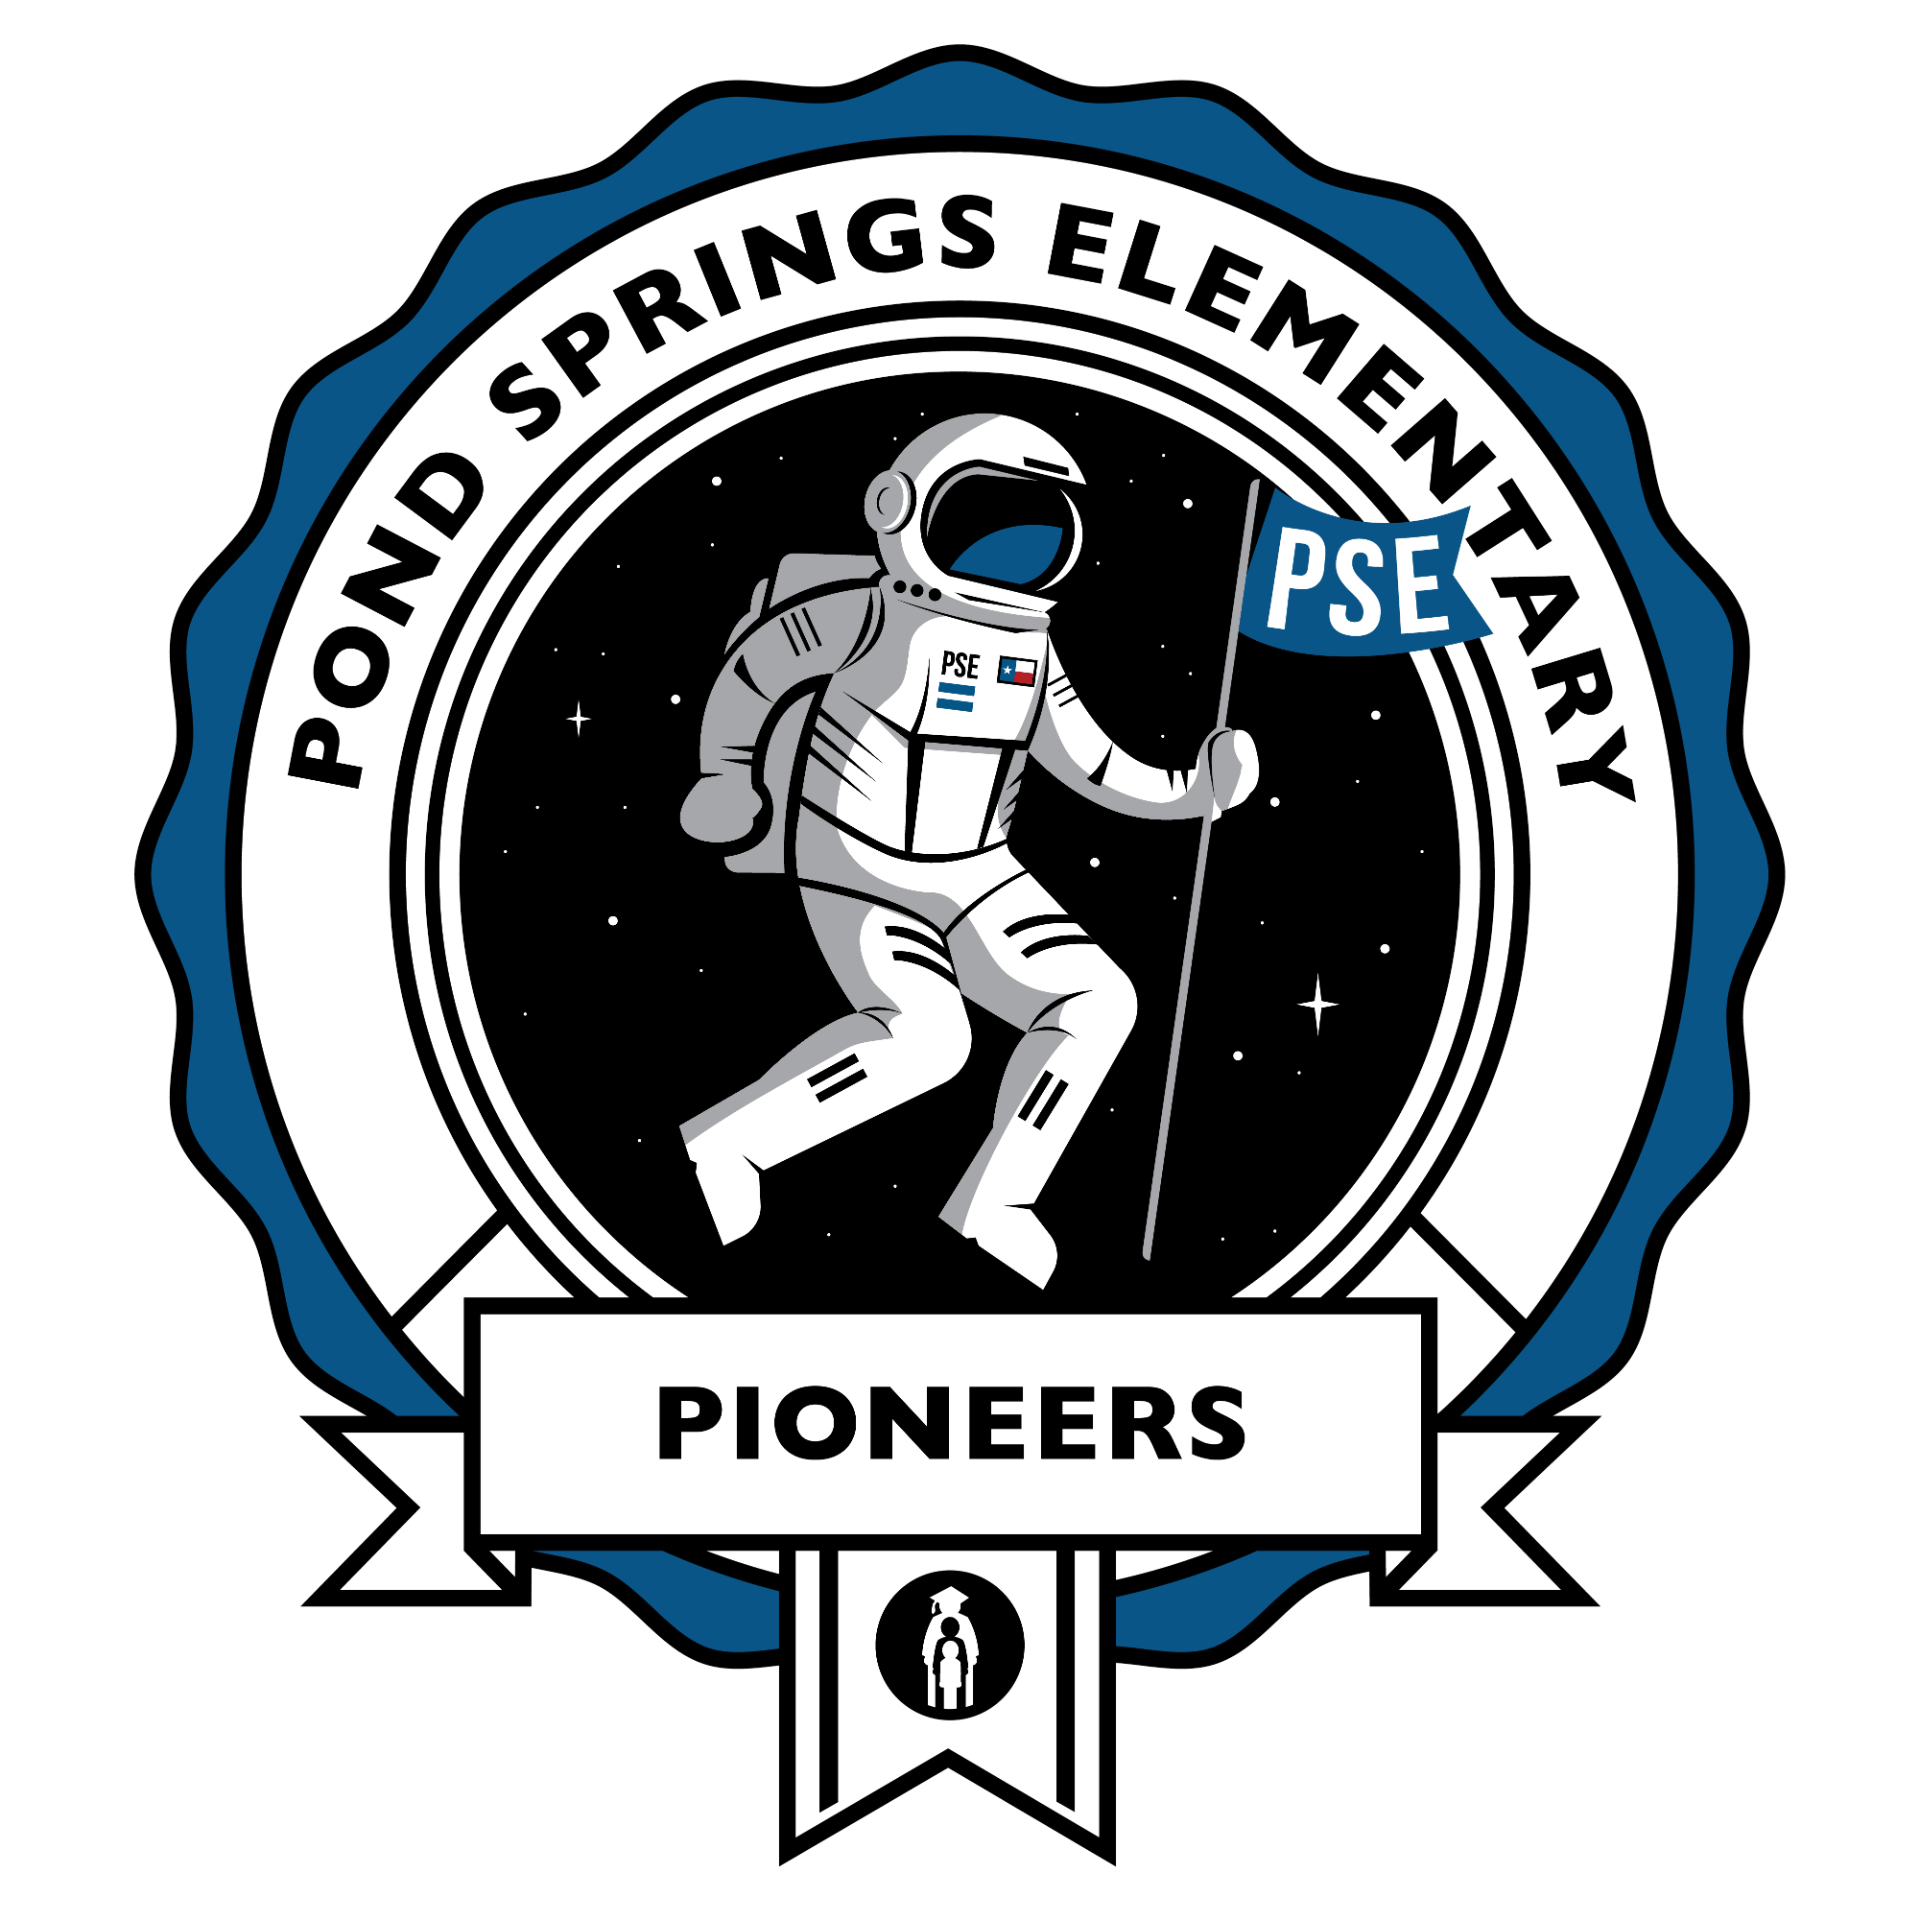 Pond Springs Elementary logo - the Pioneers